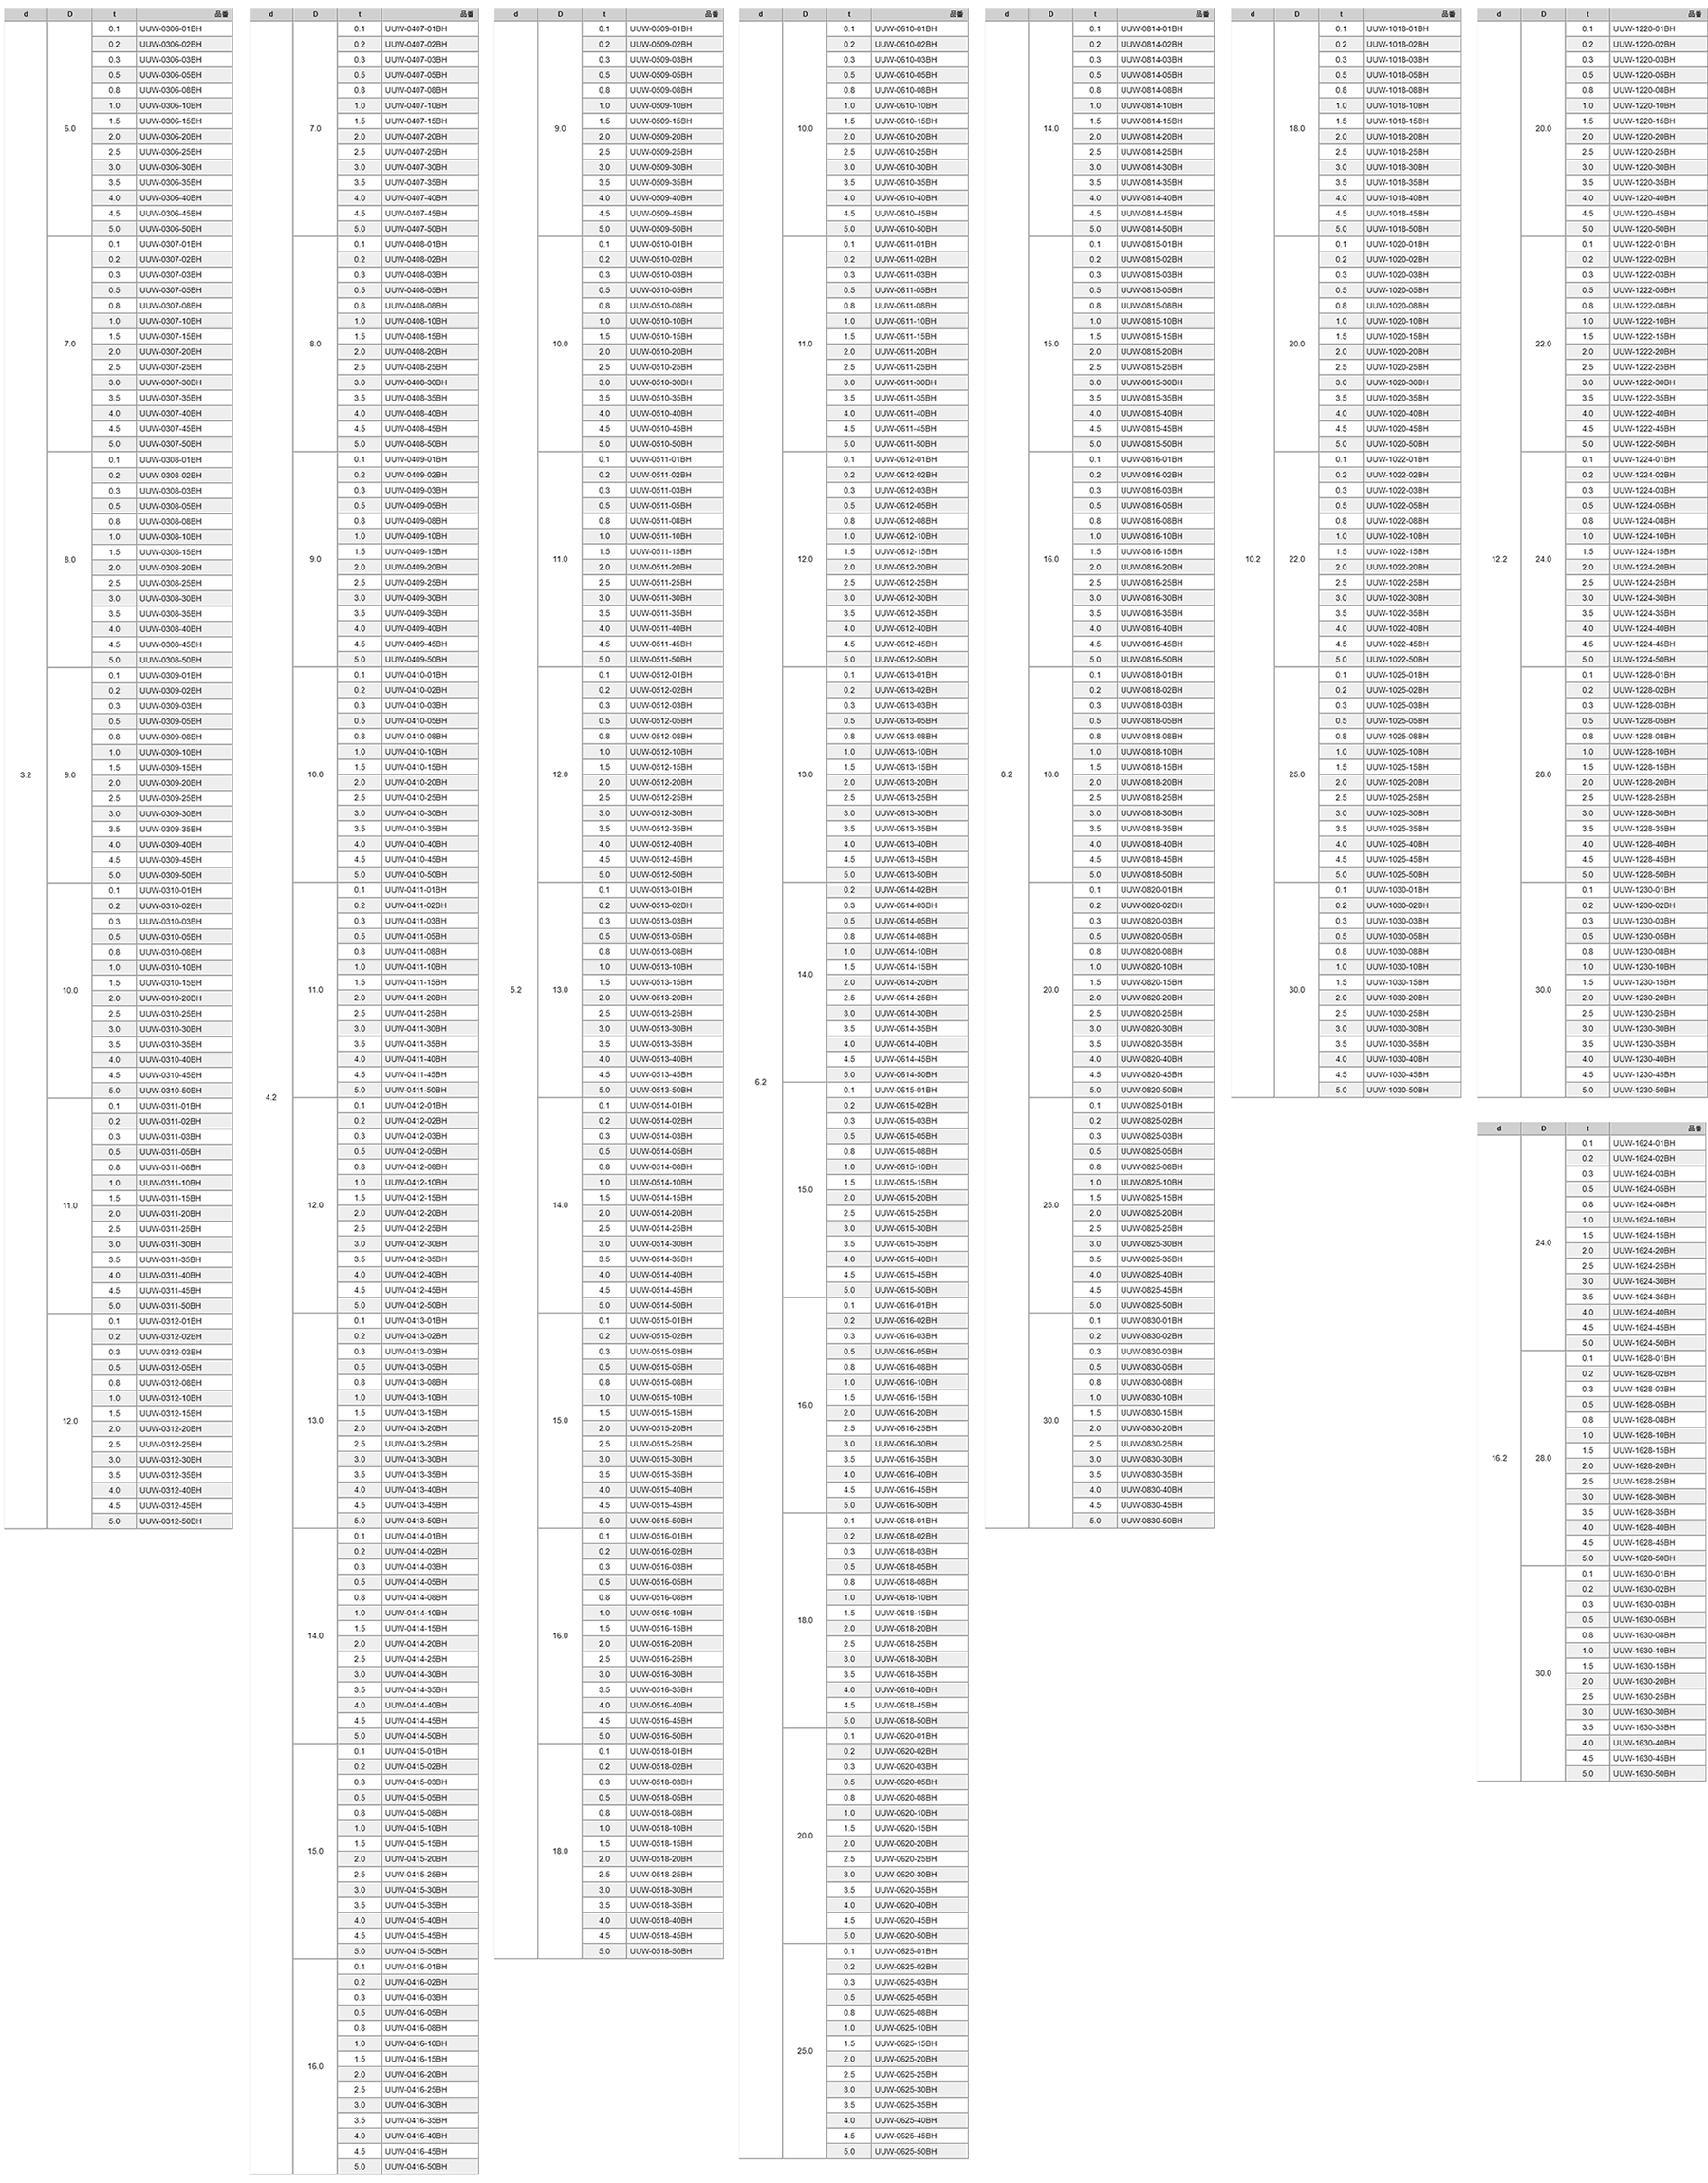 ステンレスSUS304 丸型平座金 (丸ワッシャー/フルサイズ)(UUW-BH)(黒色焼付け処理)(内径x外径-厚)の寸法表